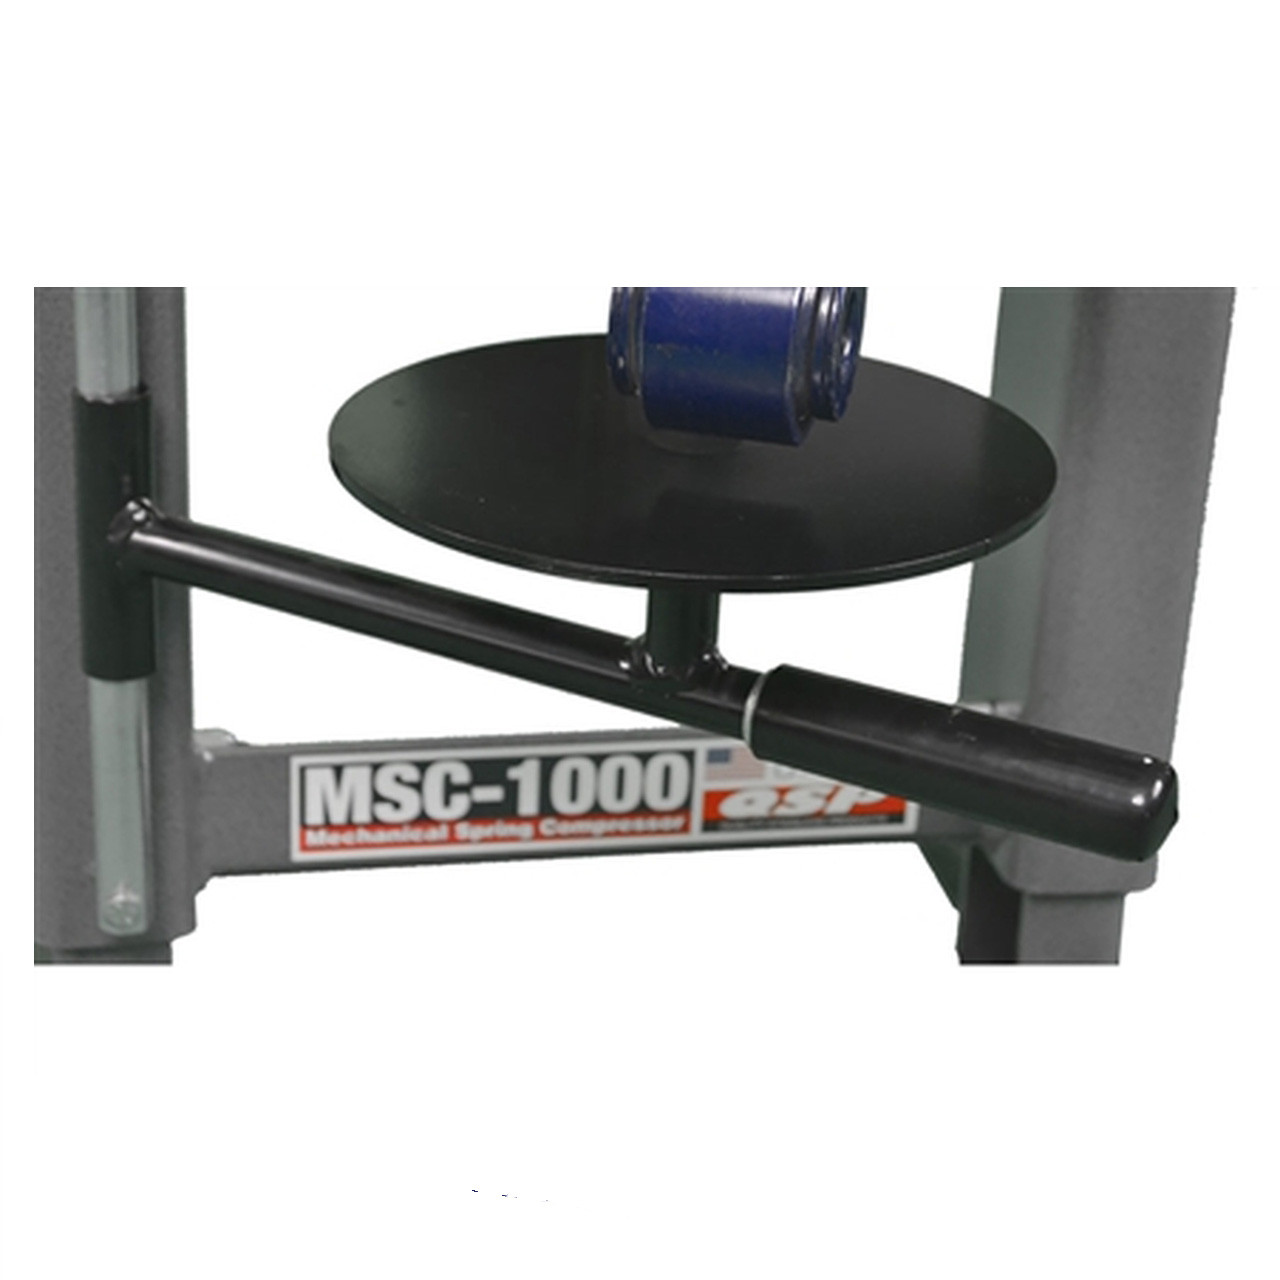 MSC-1000-030 Lower Support Plate for Manual Strut Compressor MSC-1000 Model